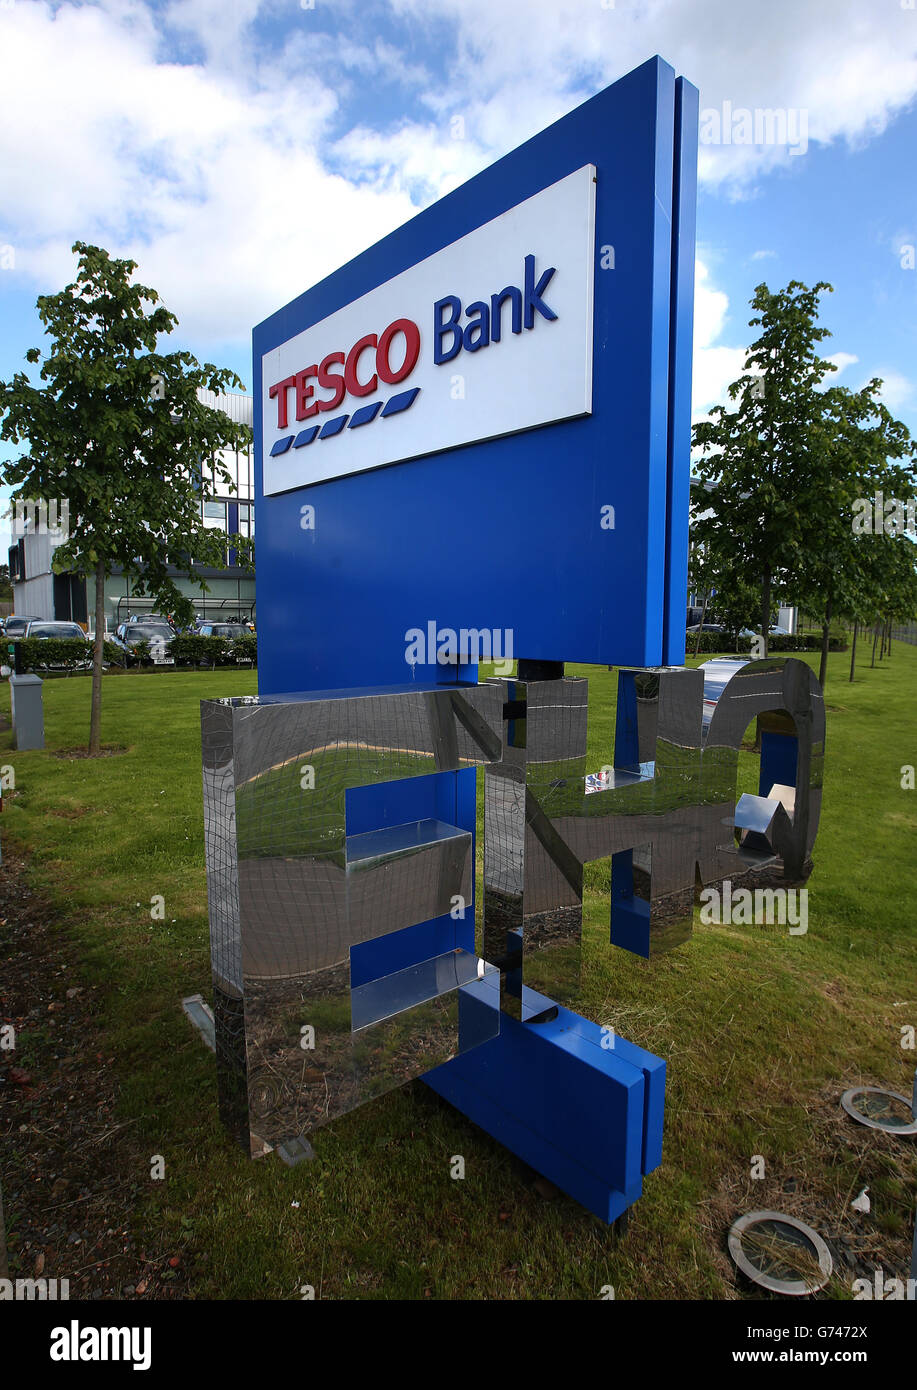 Vista generale dell'ufficio del Tesco Bank a South Gyle, Edimburgo, quando il gigante del supermercato ha assunto i giganti delle banche di High Street quando ha lanciato il suo primo conto corrente con un dito al "ridicolmente scarso valore" offerto dai rivali. Foto Stock